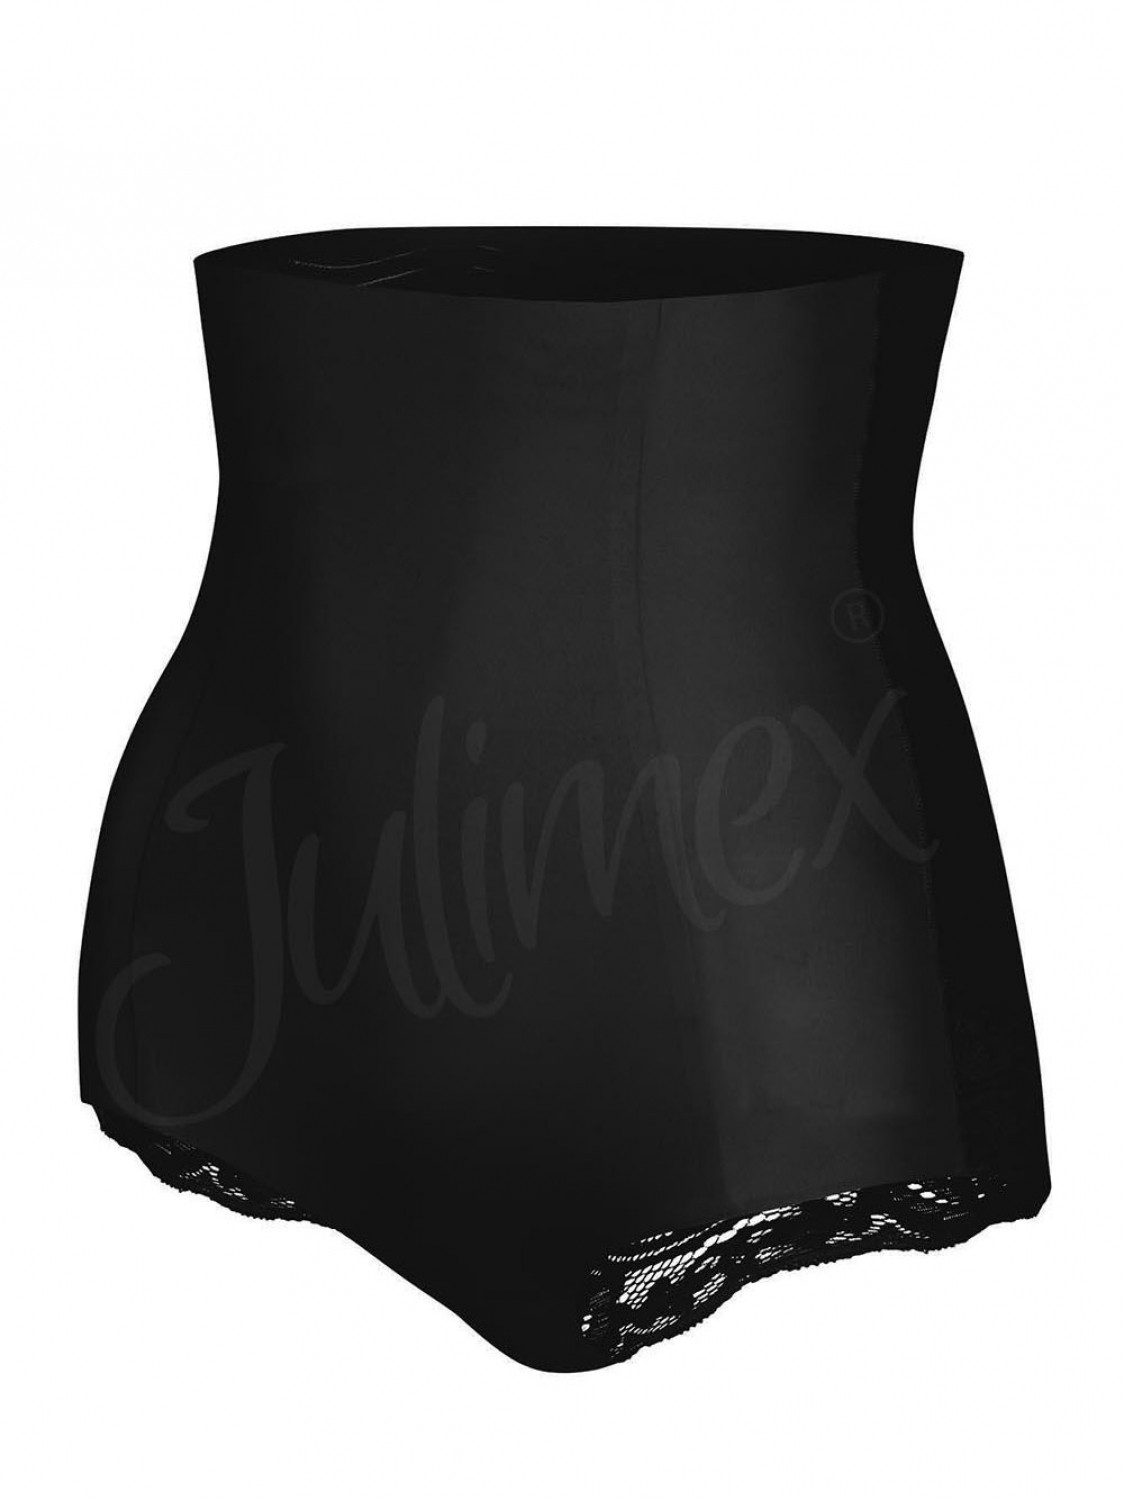 Dámské stahovací kalhotky 341 black - JULIMEX černá S